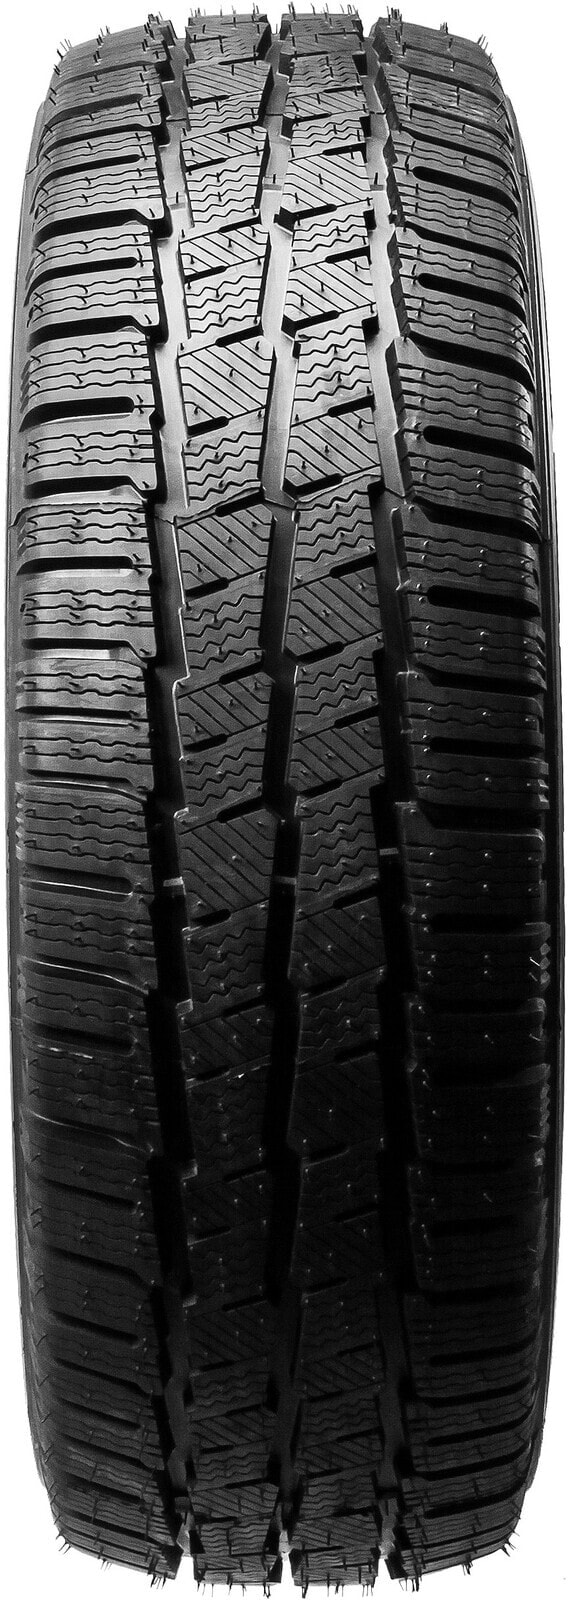 Шины для легких грузовых автомобилей зимние Michelin Agilis Alpin DOT15 235/65 R16 115/113R